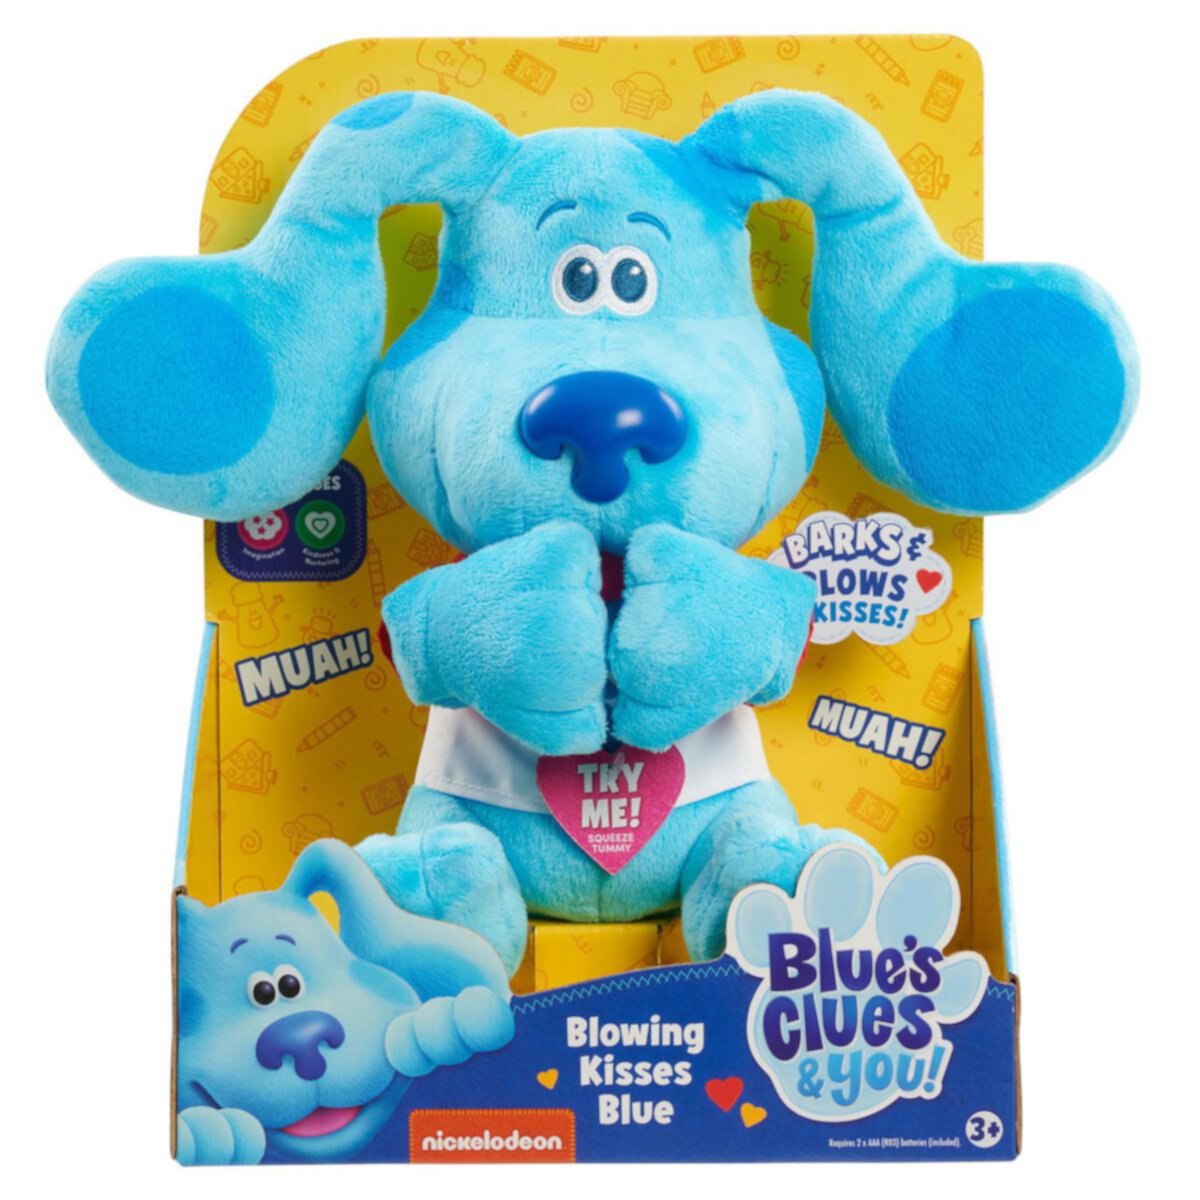 Просто сыграй в Blue's Clues & You! Голубая плюшевая игрушка Blowing Kisses Just Play